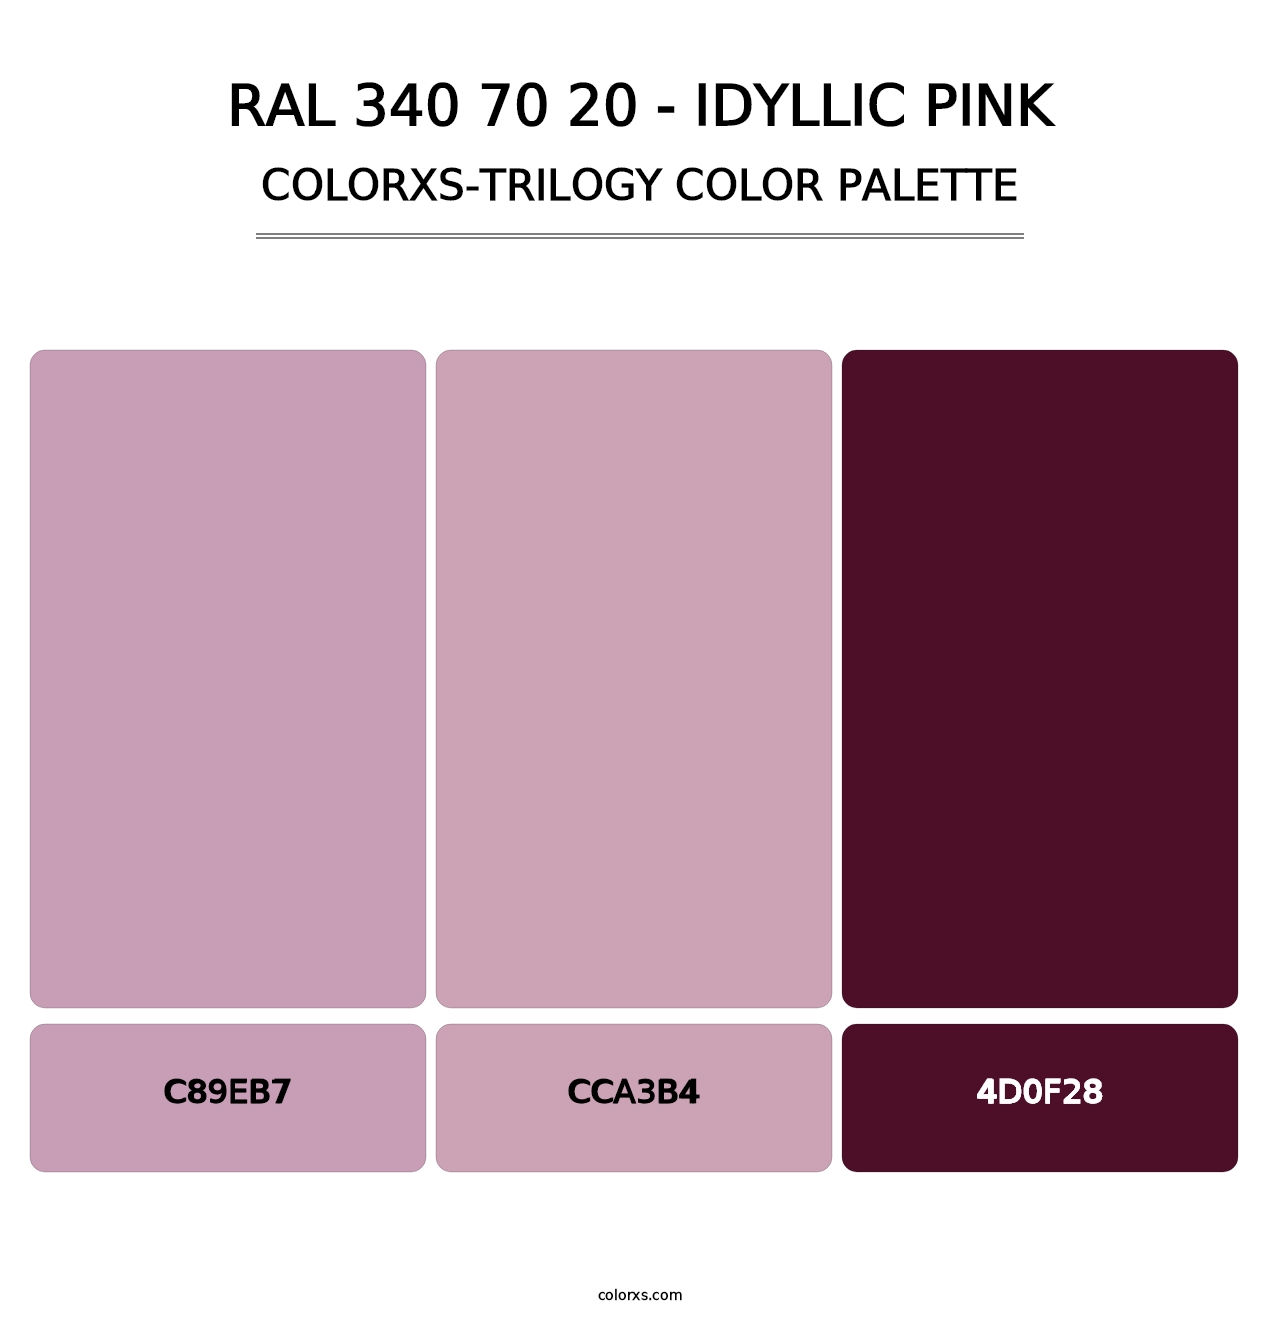 RAL 340 70 20 - Idyllic Pink - Colorxs Trilogy Palette